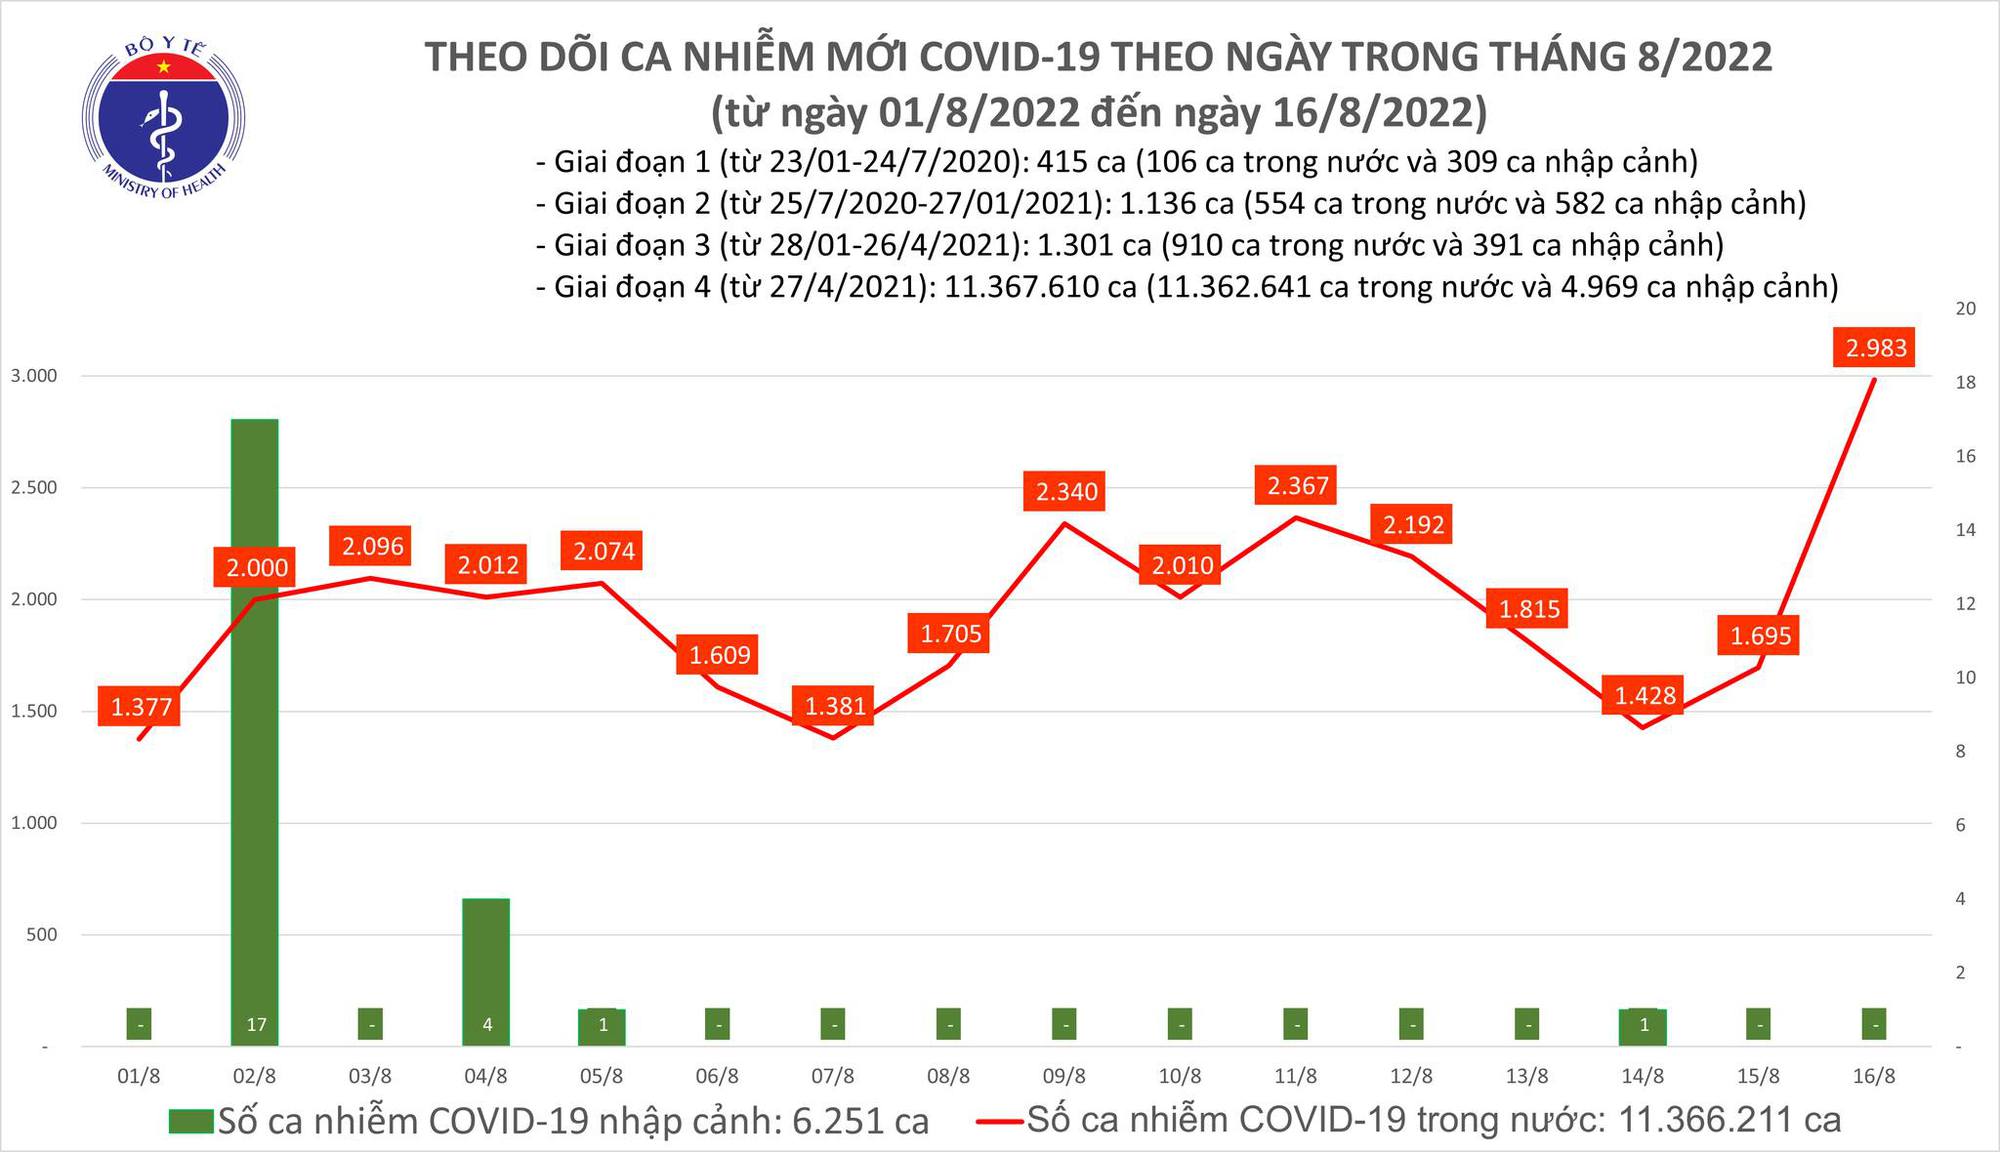 Covid-19 ngày 16/8 tăng vọt lên gần 3000 ca, nhiều biến thể mới xuất hiện - Ảnh 1.